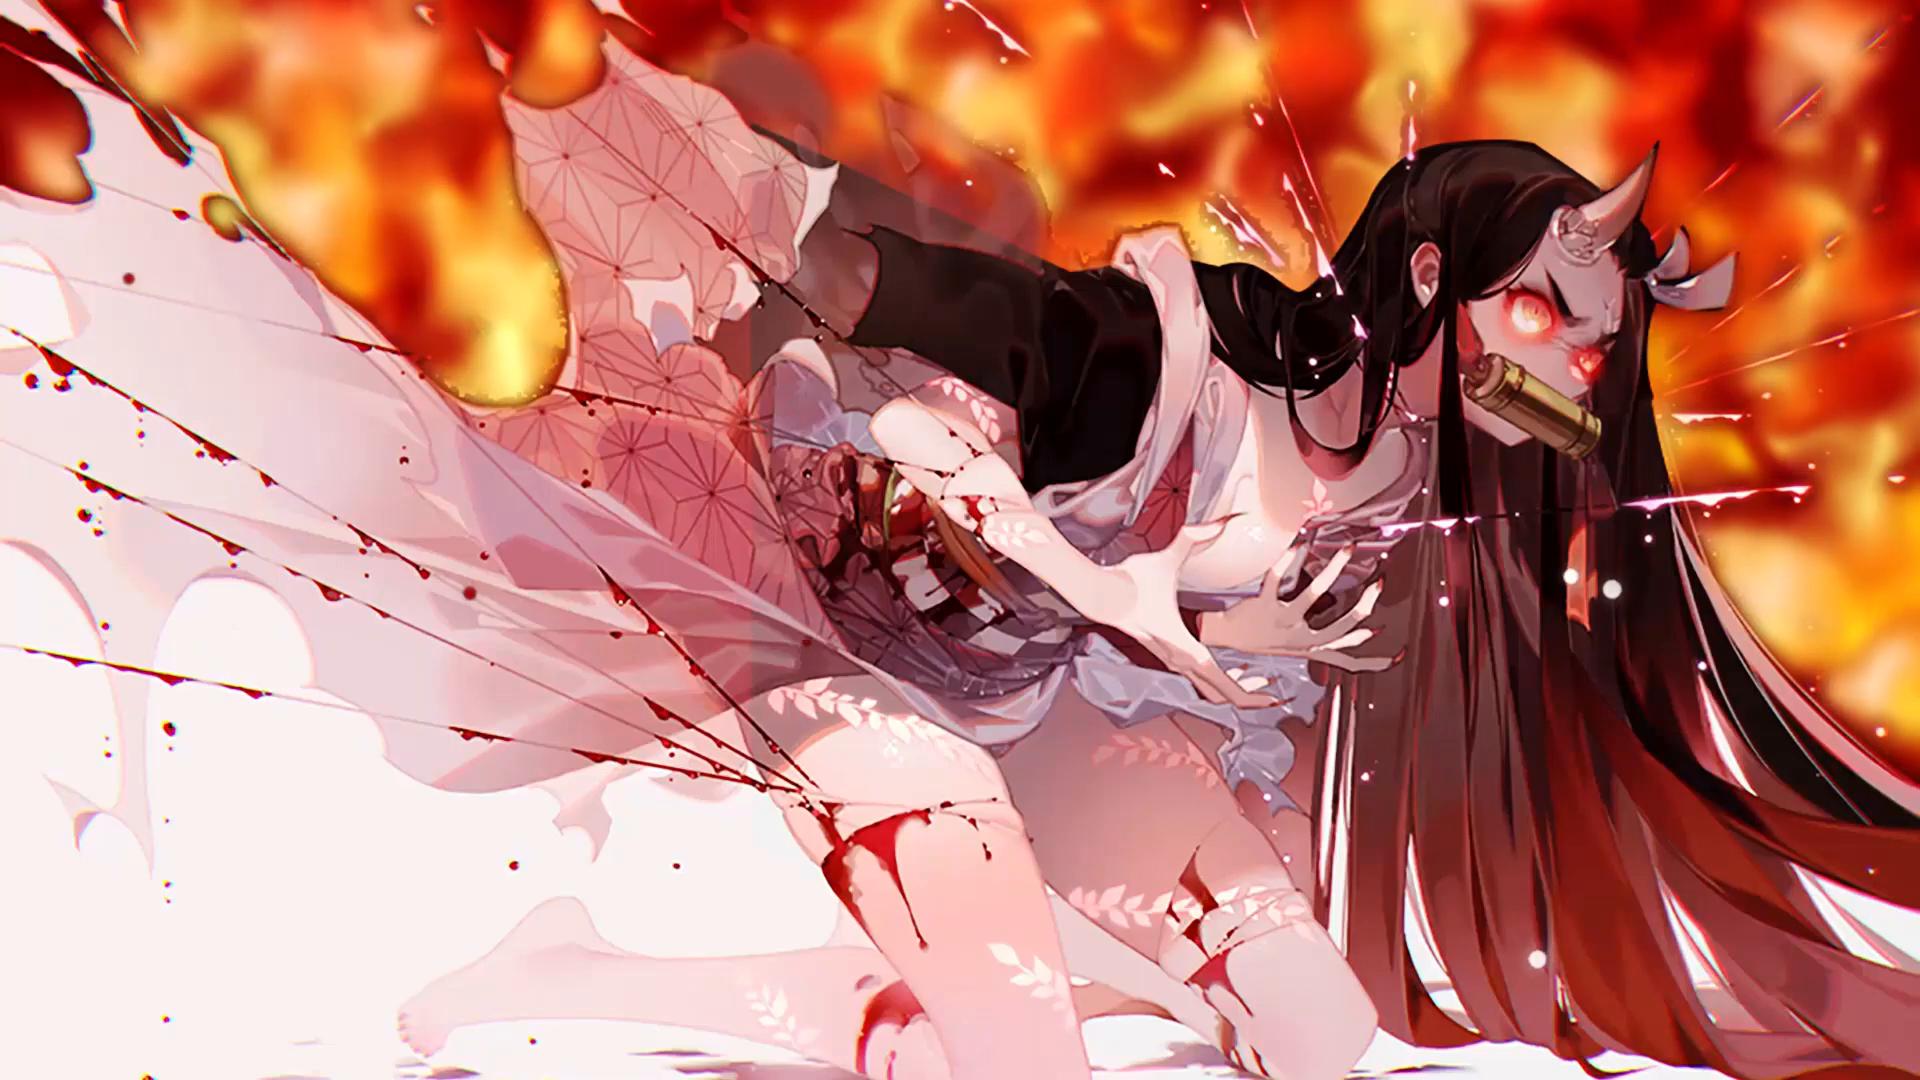 Wallpaper ID: 424650 / Anime Demon Slayer: Kimetsu no Yaiba Phone Wallpaper,  Nezuko Kamado, 800x1280 free download